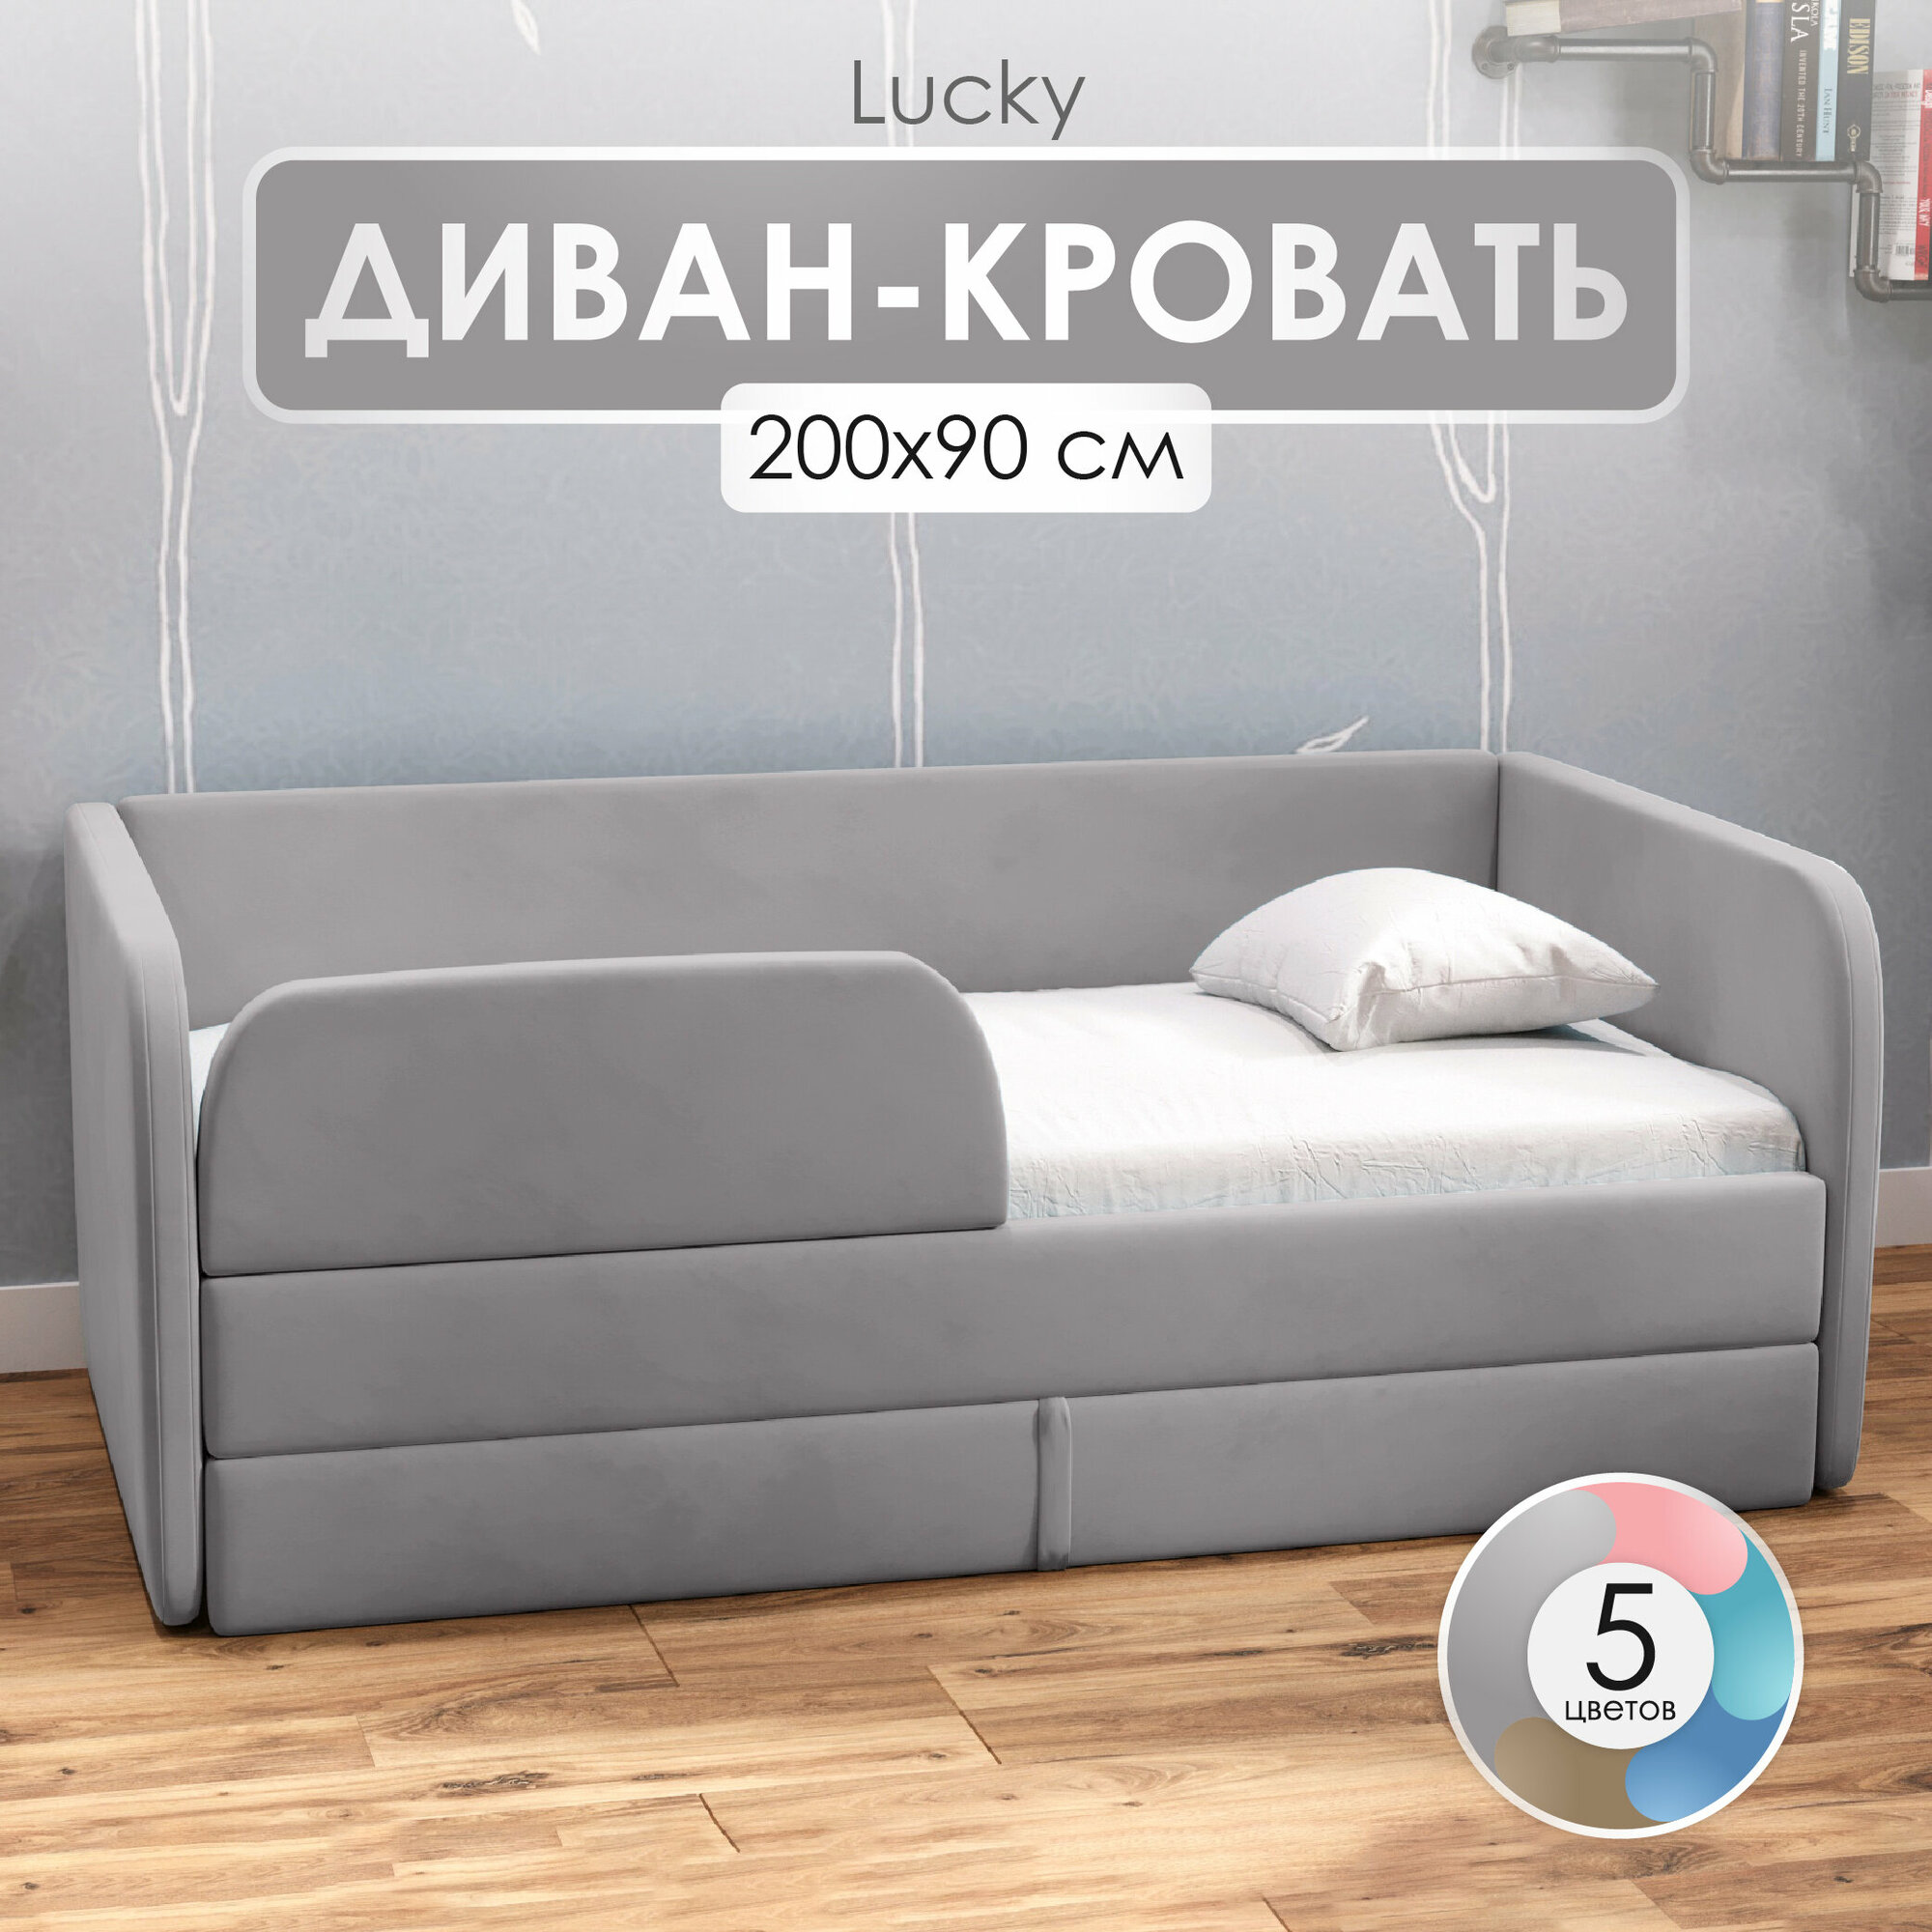 Детский диван кровать 200х90 см Lucky цвет Серый, кровать диван от 3 лет, с бортиками и выкатным ящиком, тахта кровать софа односпальная подростковая